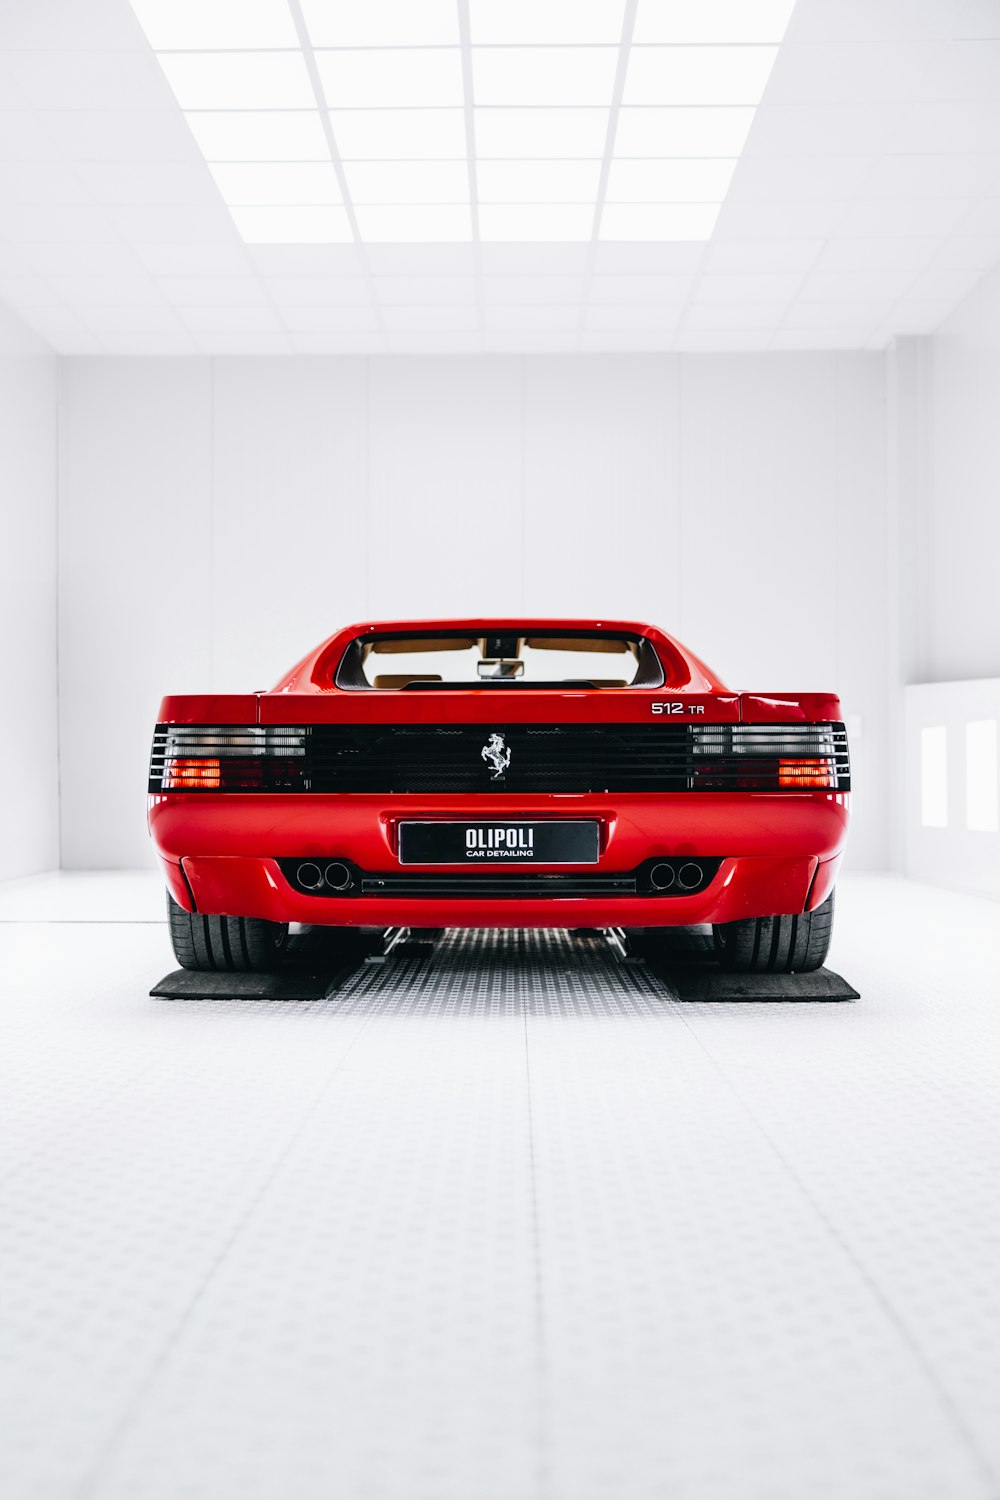 Un coche deportivo rojo aparcado en una habitación blanca